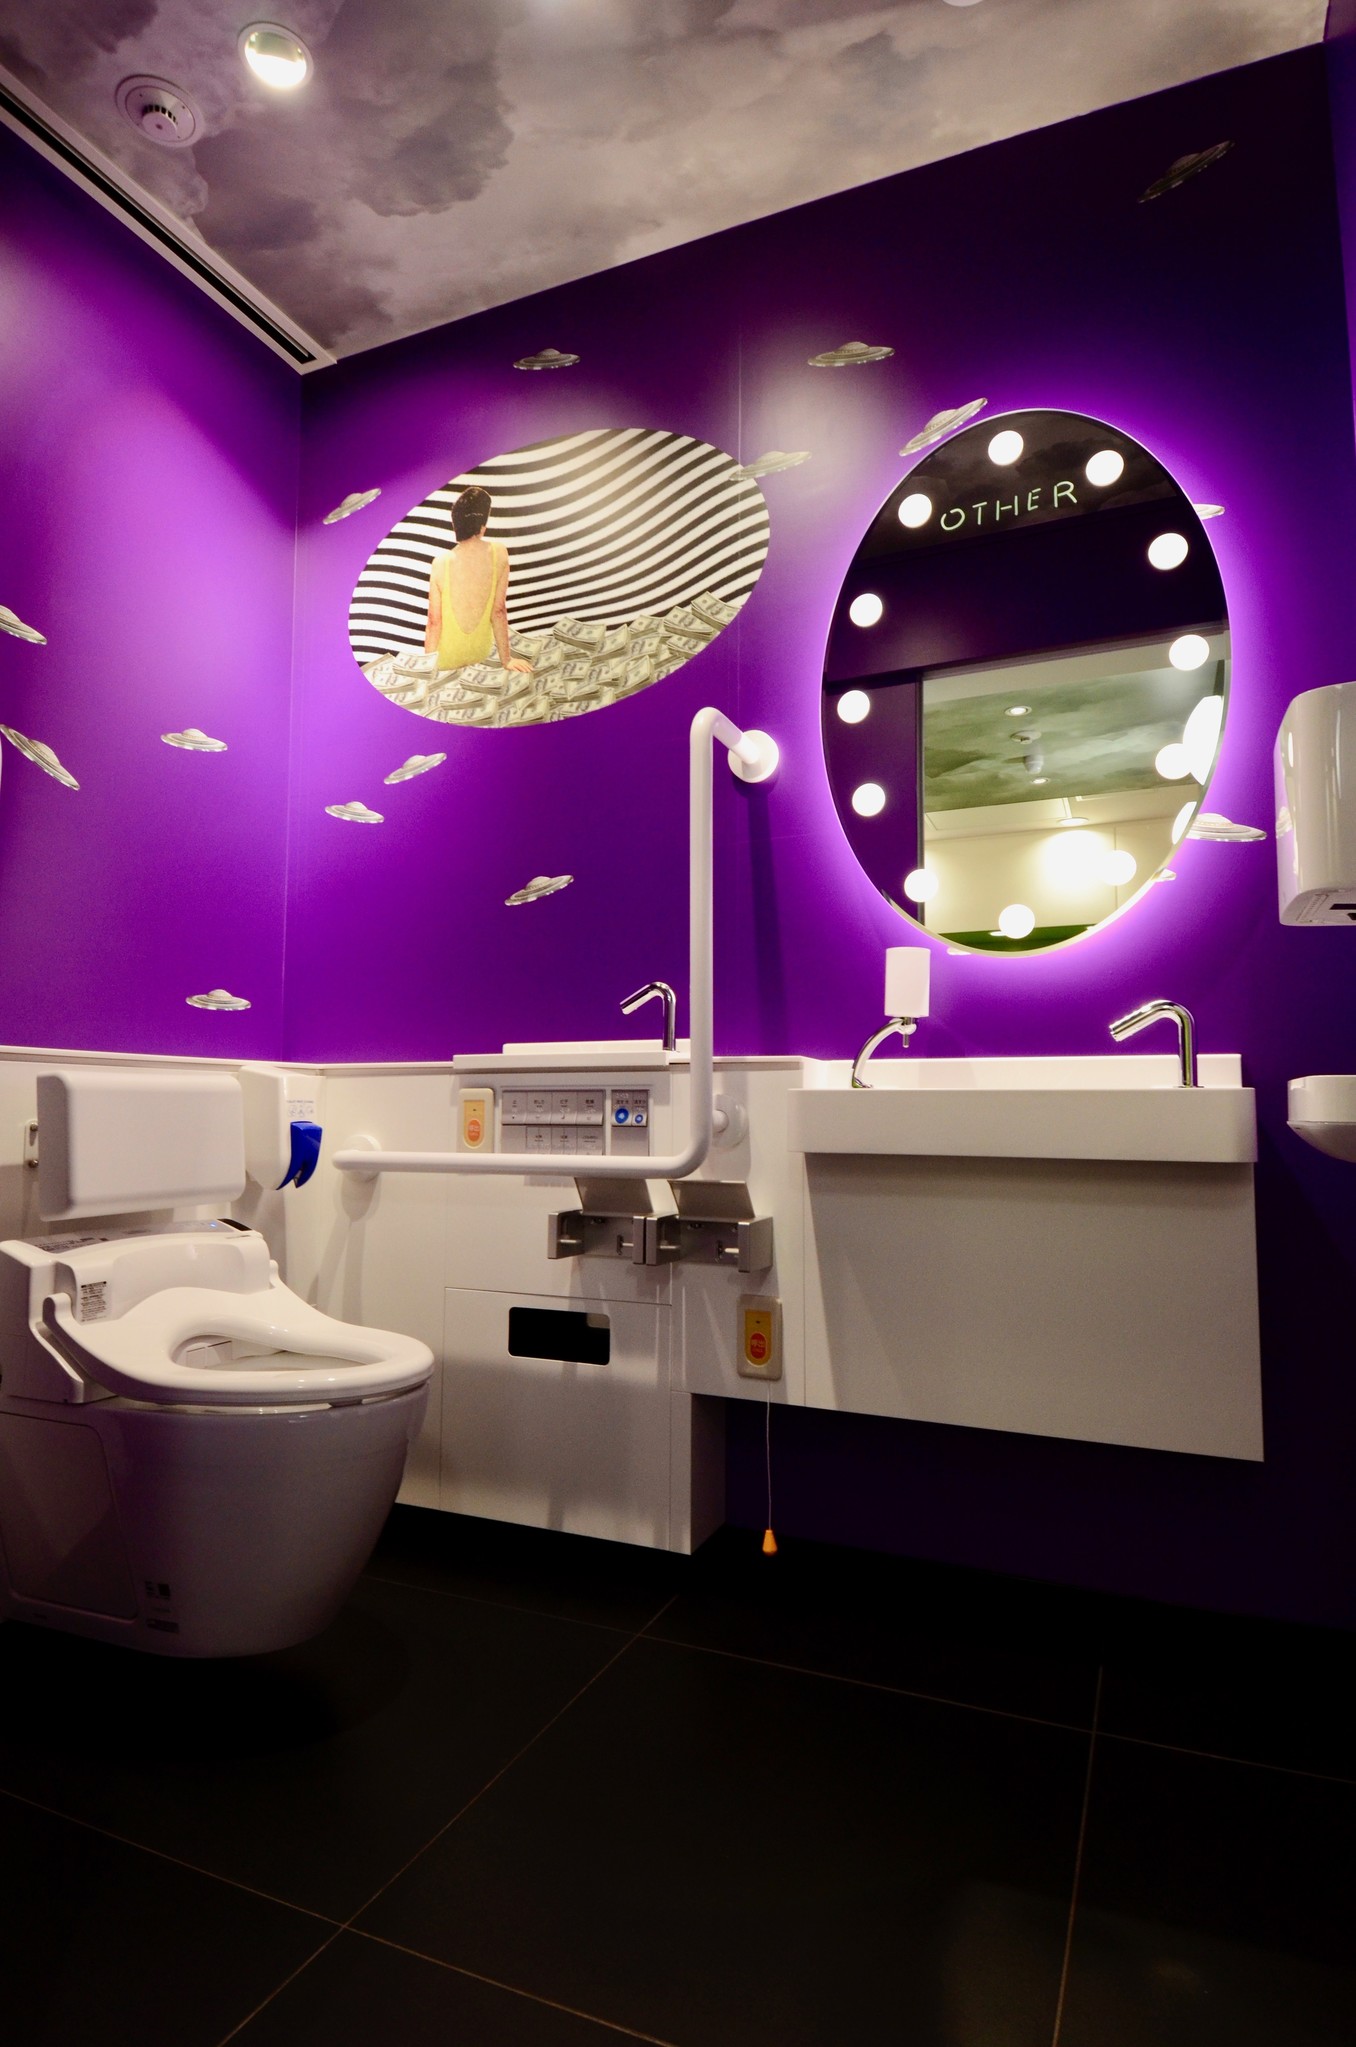 ラフォーレ原宿3階のトイレが3月23日(土)リニューアル アーティスト“とんだ林蘭”デザインのトイレが登場 「原宿の